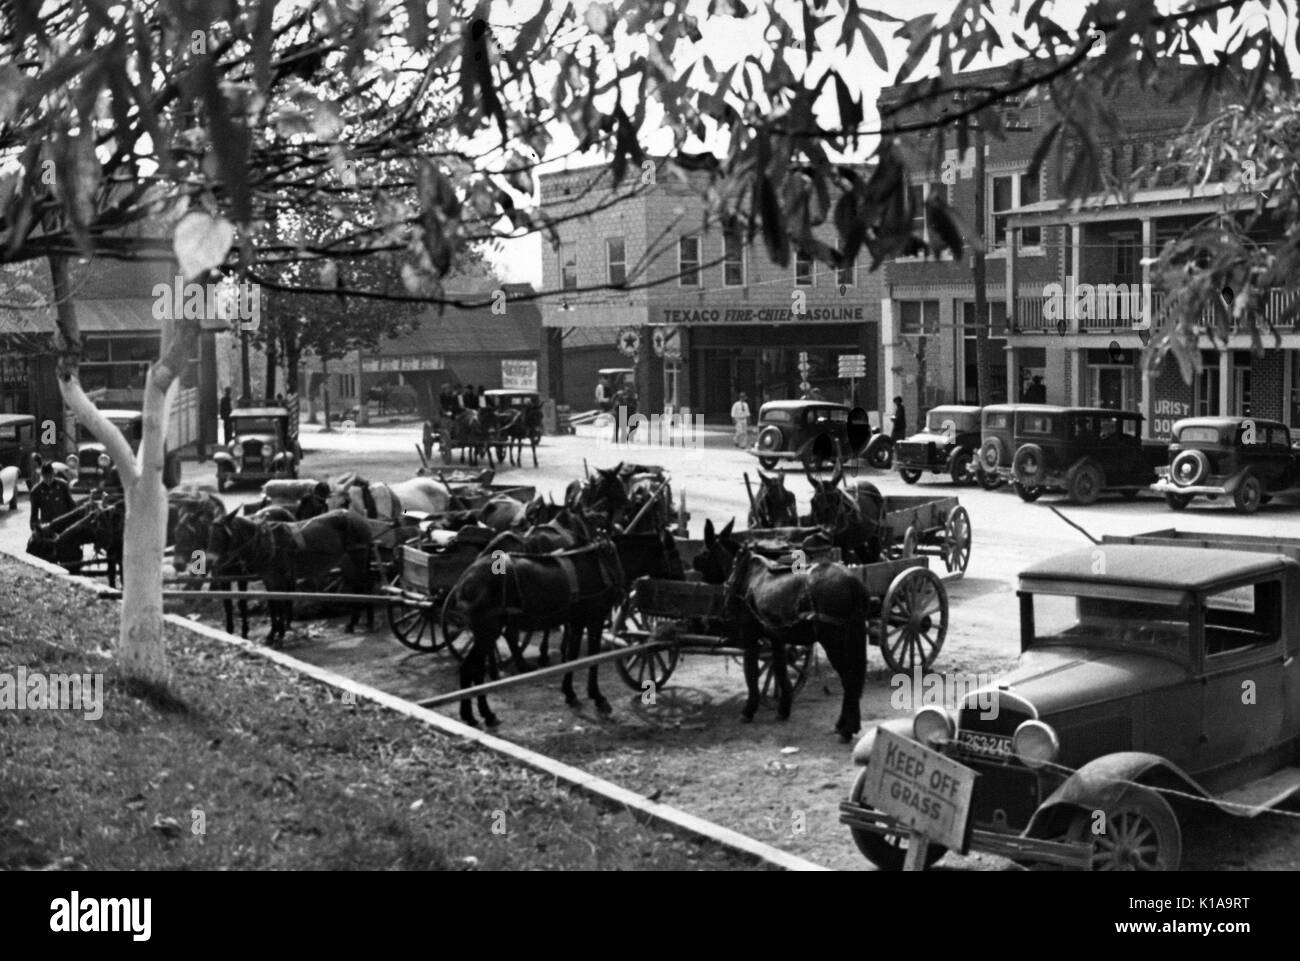 Eine Stadt, die Plaza ist mit Mannschaften der Pferde ziehen wagen beringt, mit zusätzlichen Pferde hitched auf eine Wand und geparkte Autos sichtbar wie Menschen unternehmerisches Verhalten in der Stadt, Camden, Tennessee, 1935. Von der New York Public Library. Stockfoto